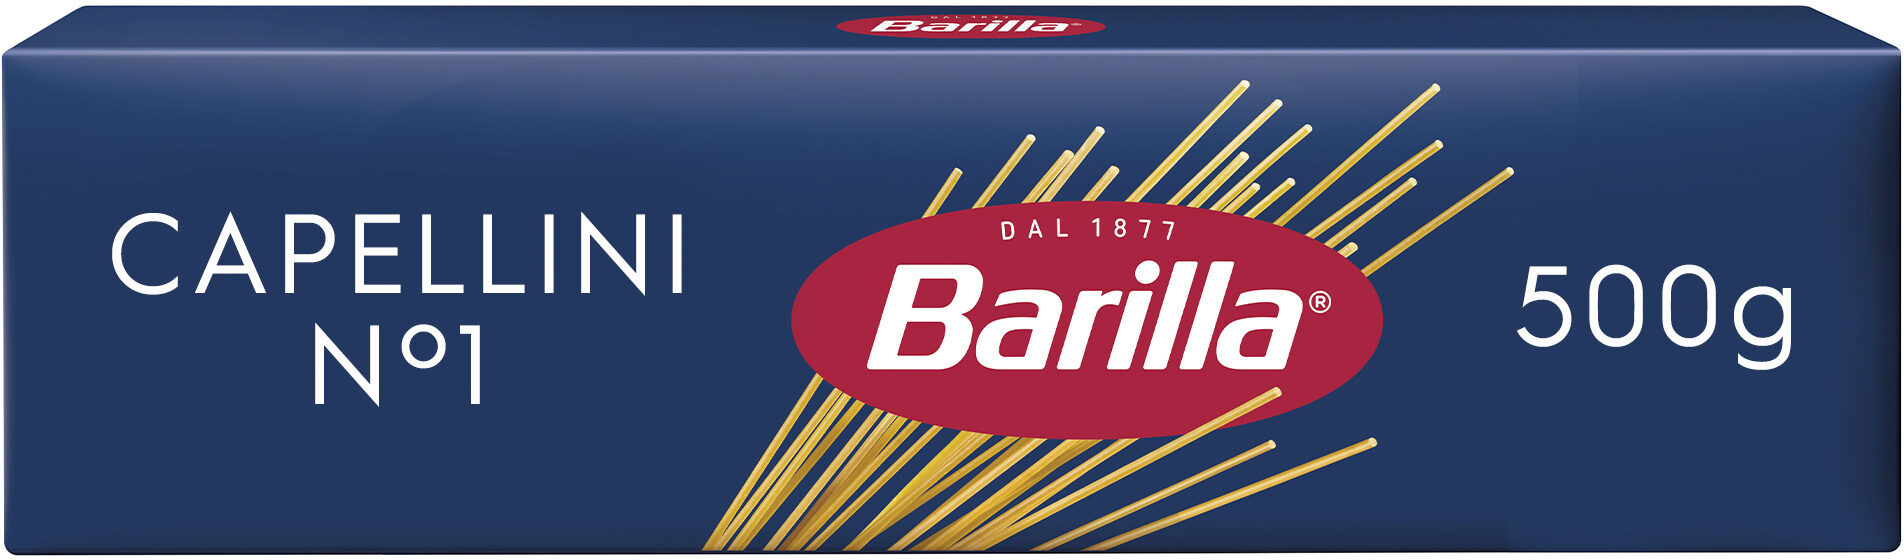 Capellini (Spagetti) Nr. 1 - Produkt